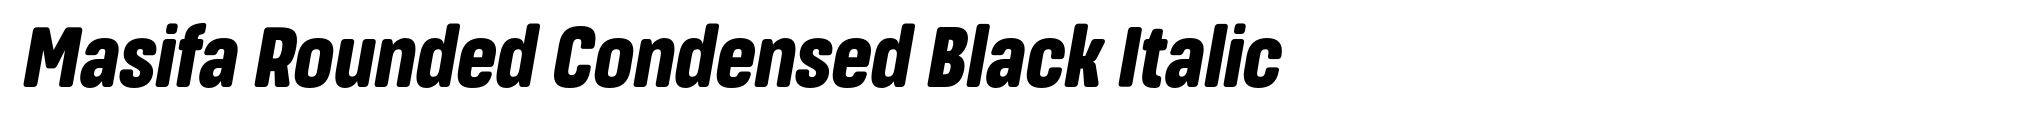 Masifa Rounded Condensed Black Italic image